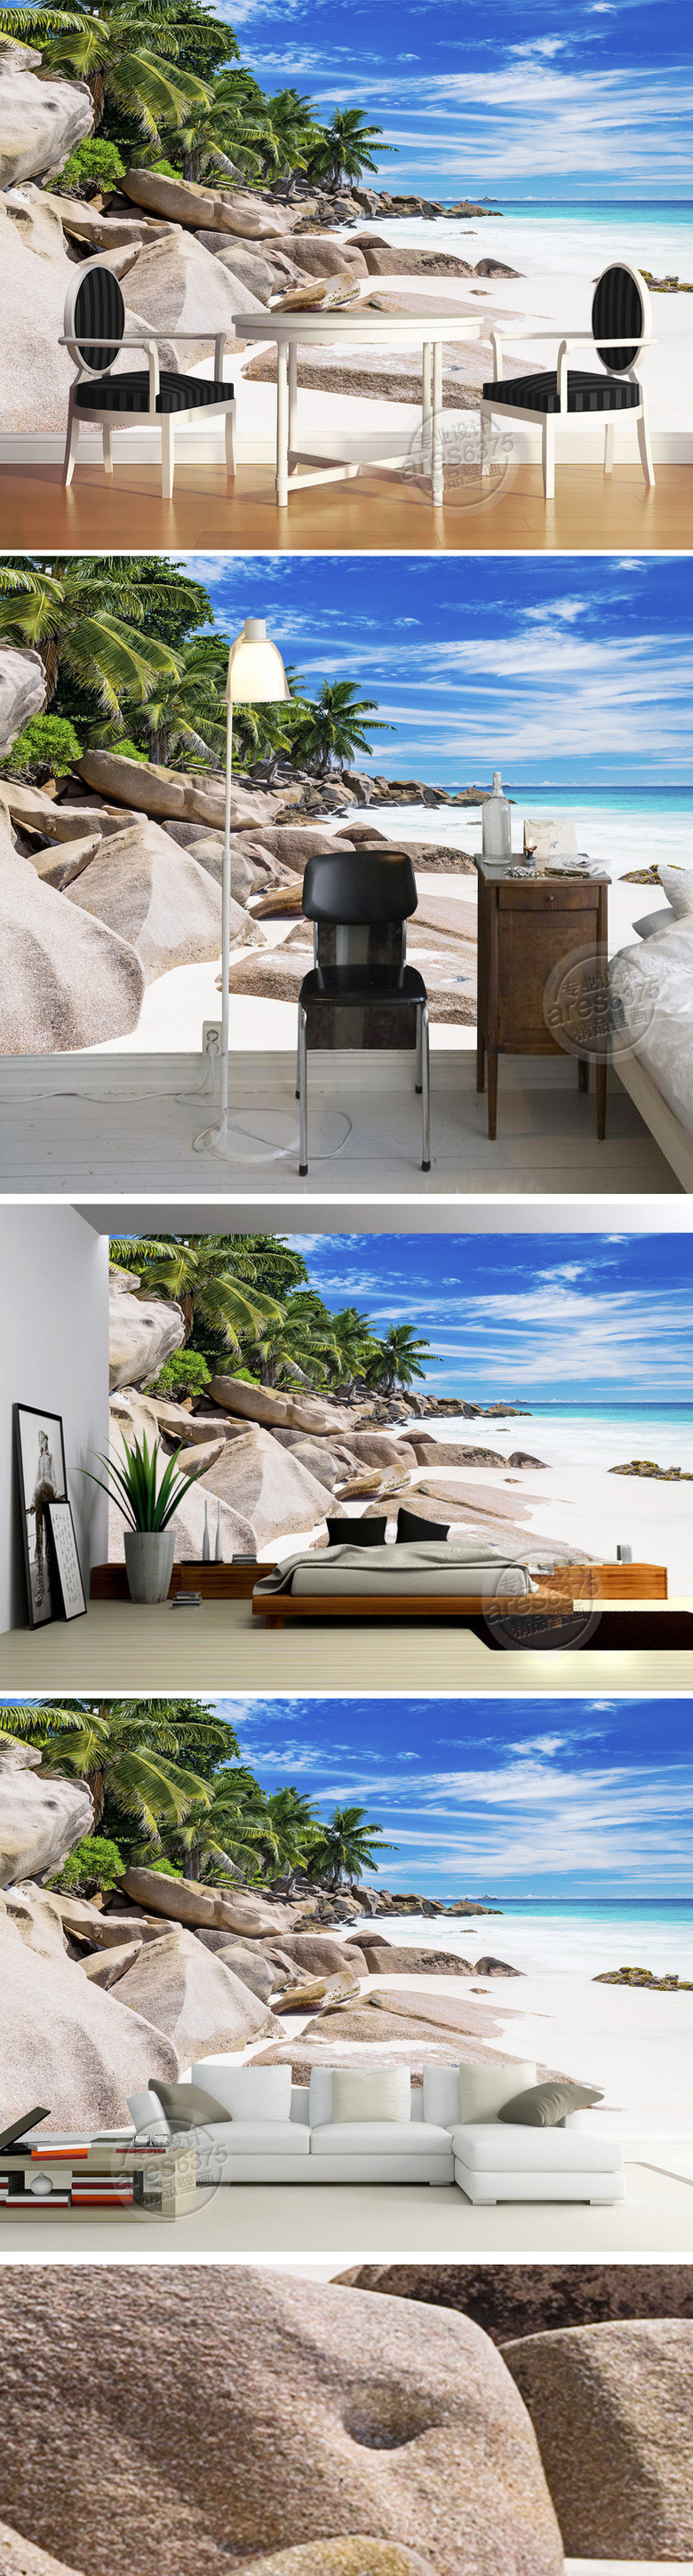 原创3d高清海滩礁石椰树大海沙滩壁画背景墙